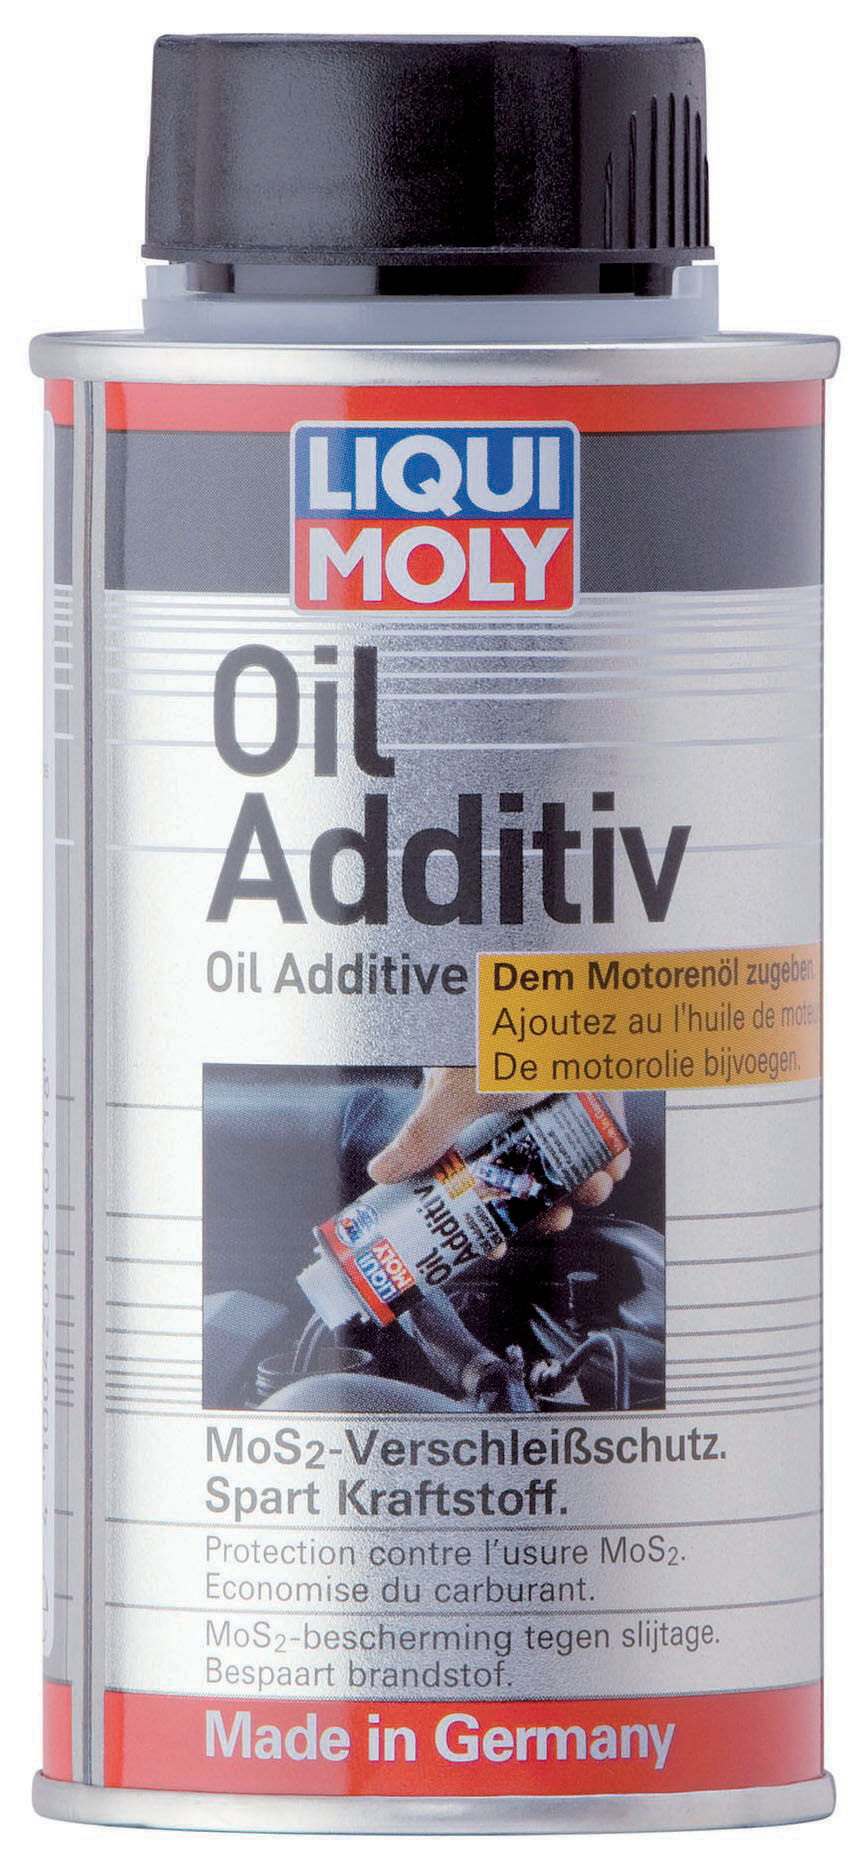  Liqui Moly Oil Additiv Verschleißschutz Dose Blech 1x 125 ml 1011